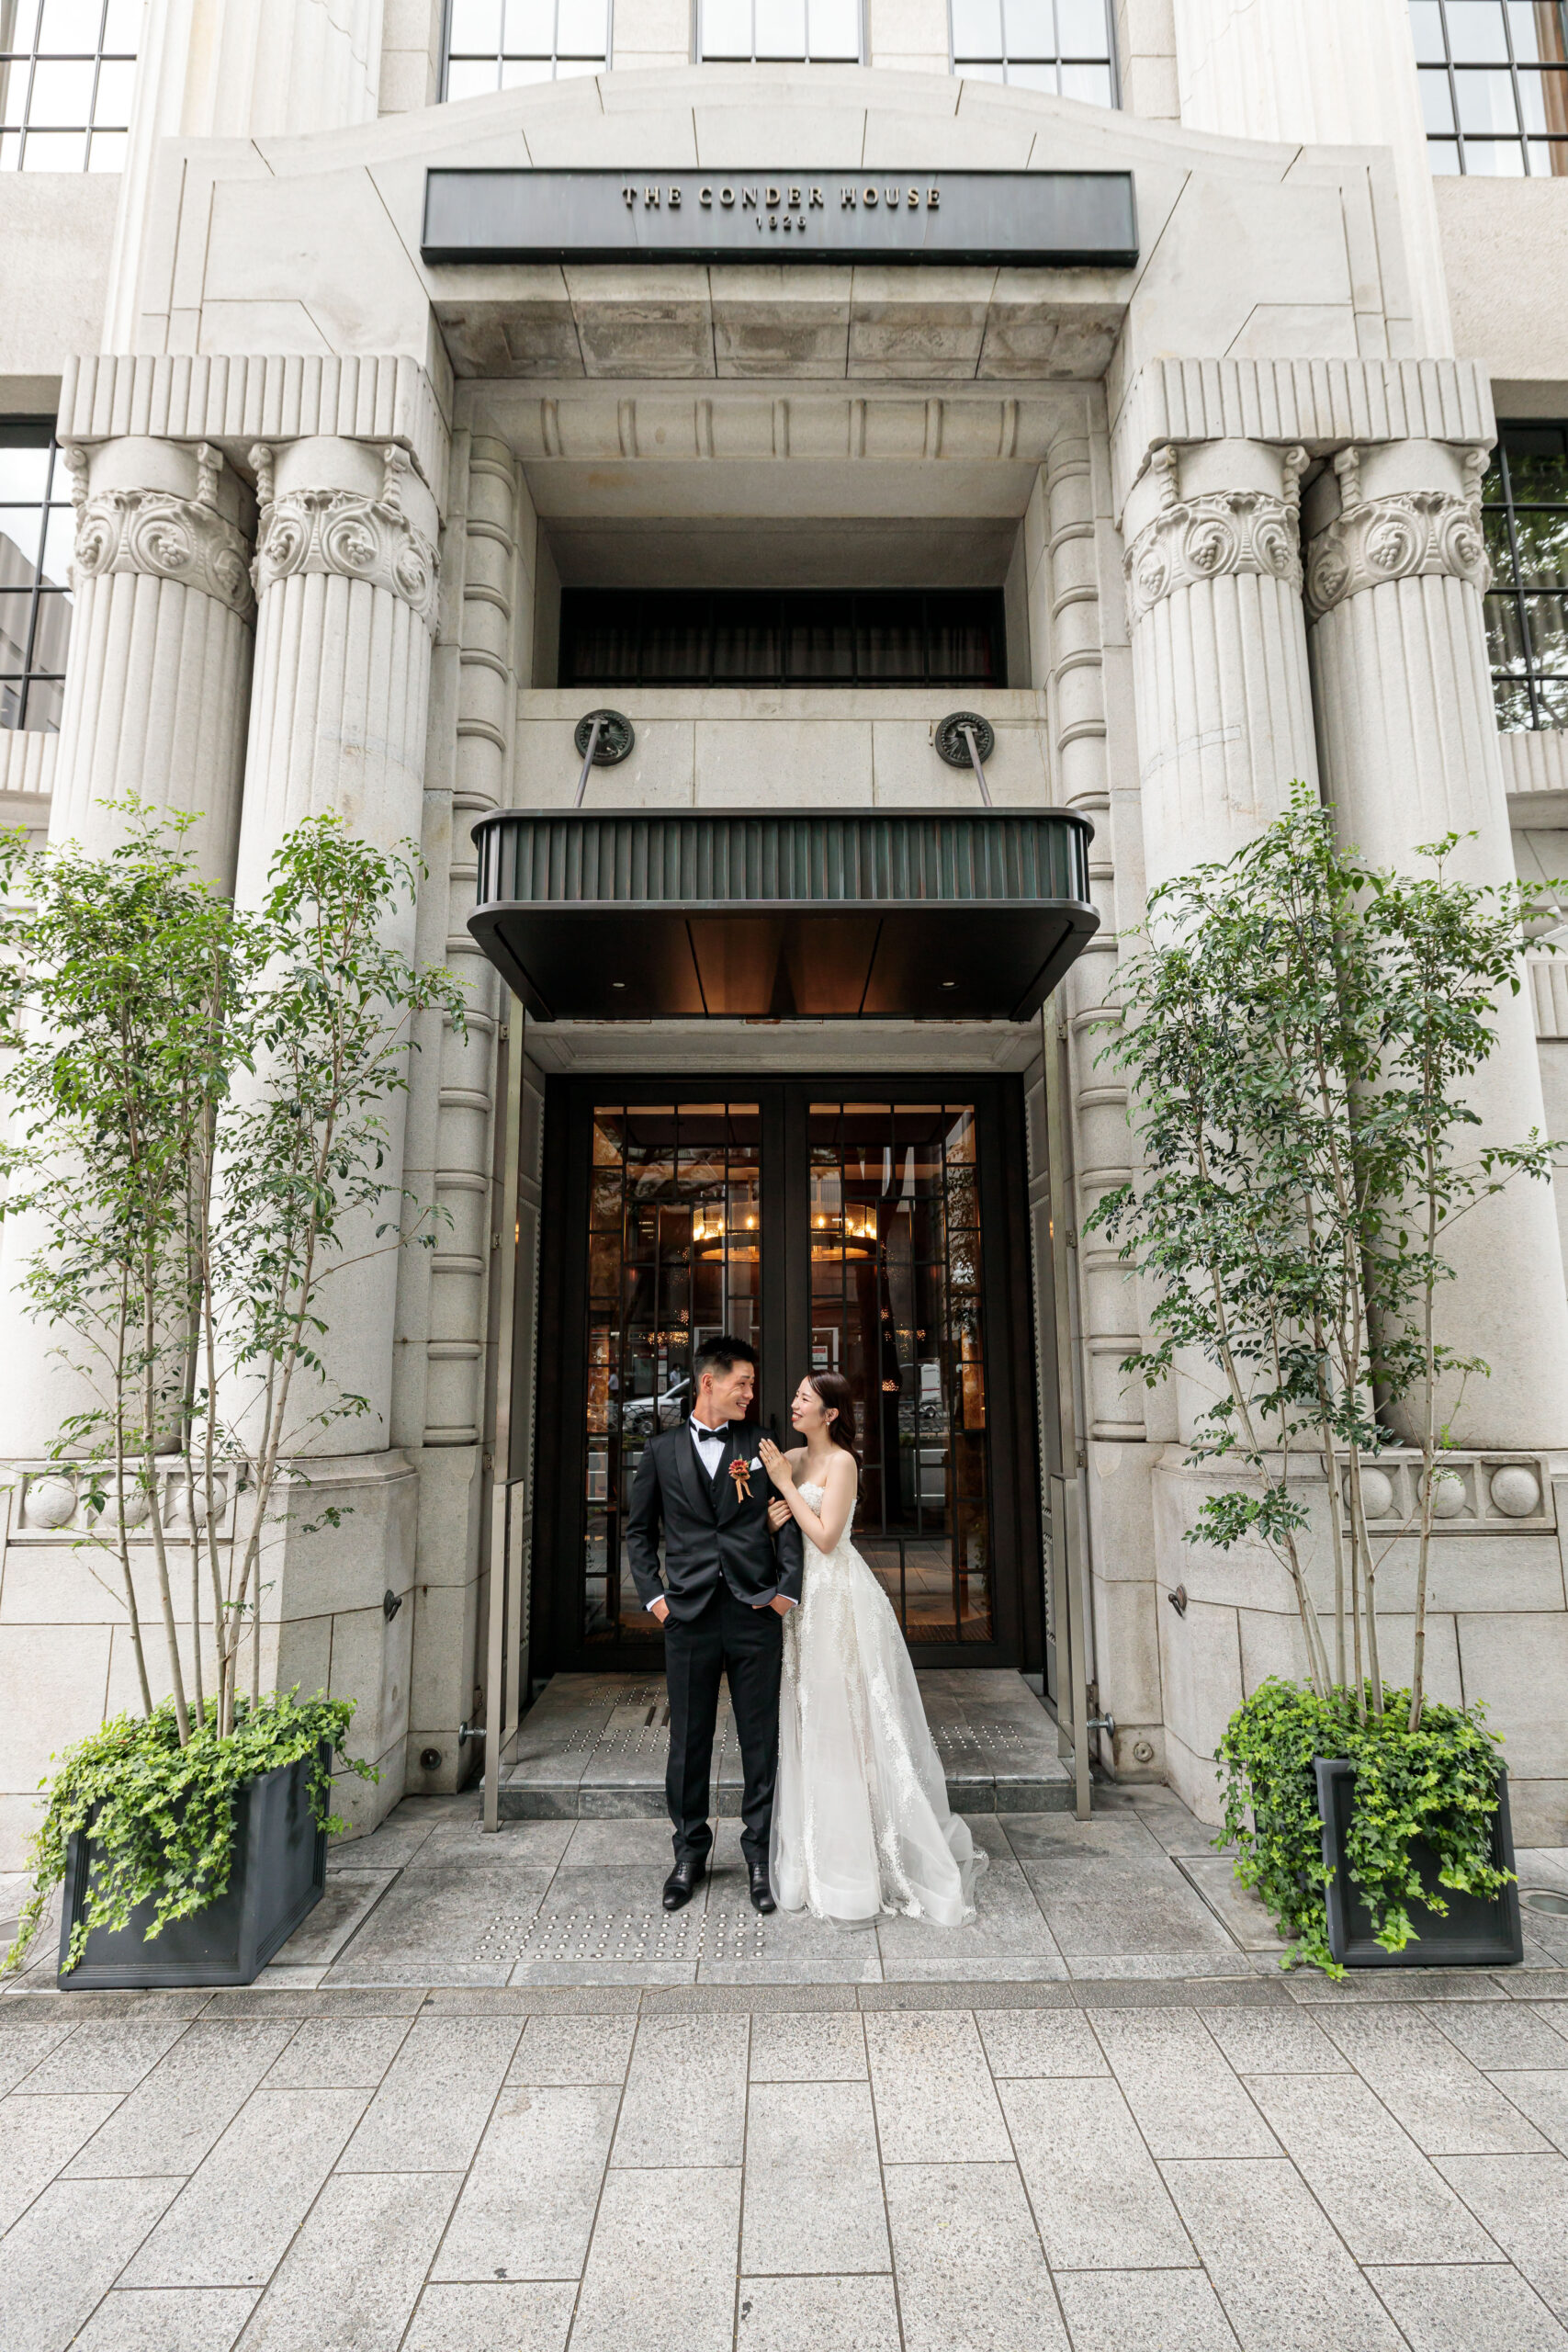 名古屋の結婚式場、ザコンダーハウスでウェディングドレスの前撮りをされたおふたりのご紹介